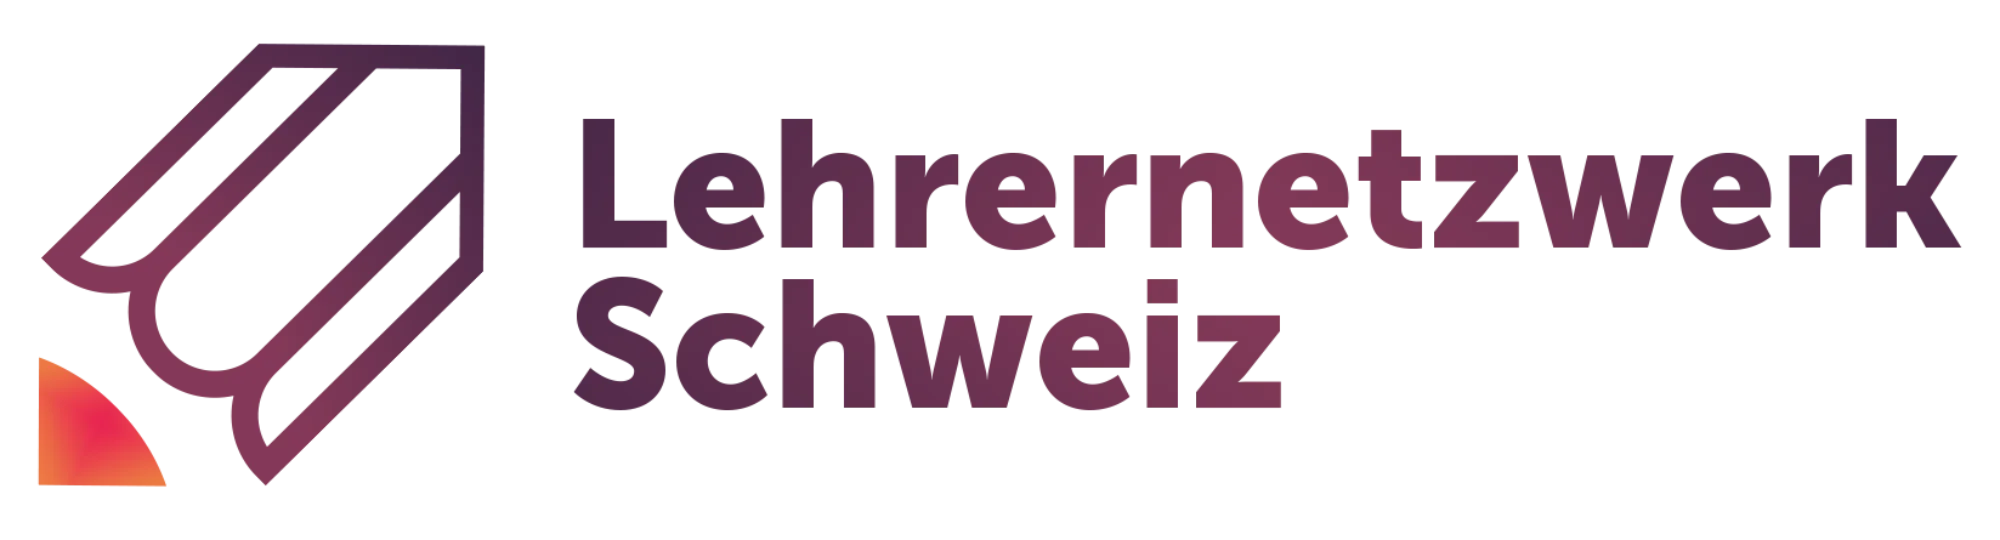 Lehrernetzwerk Schweiz